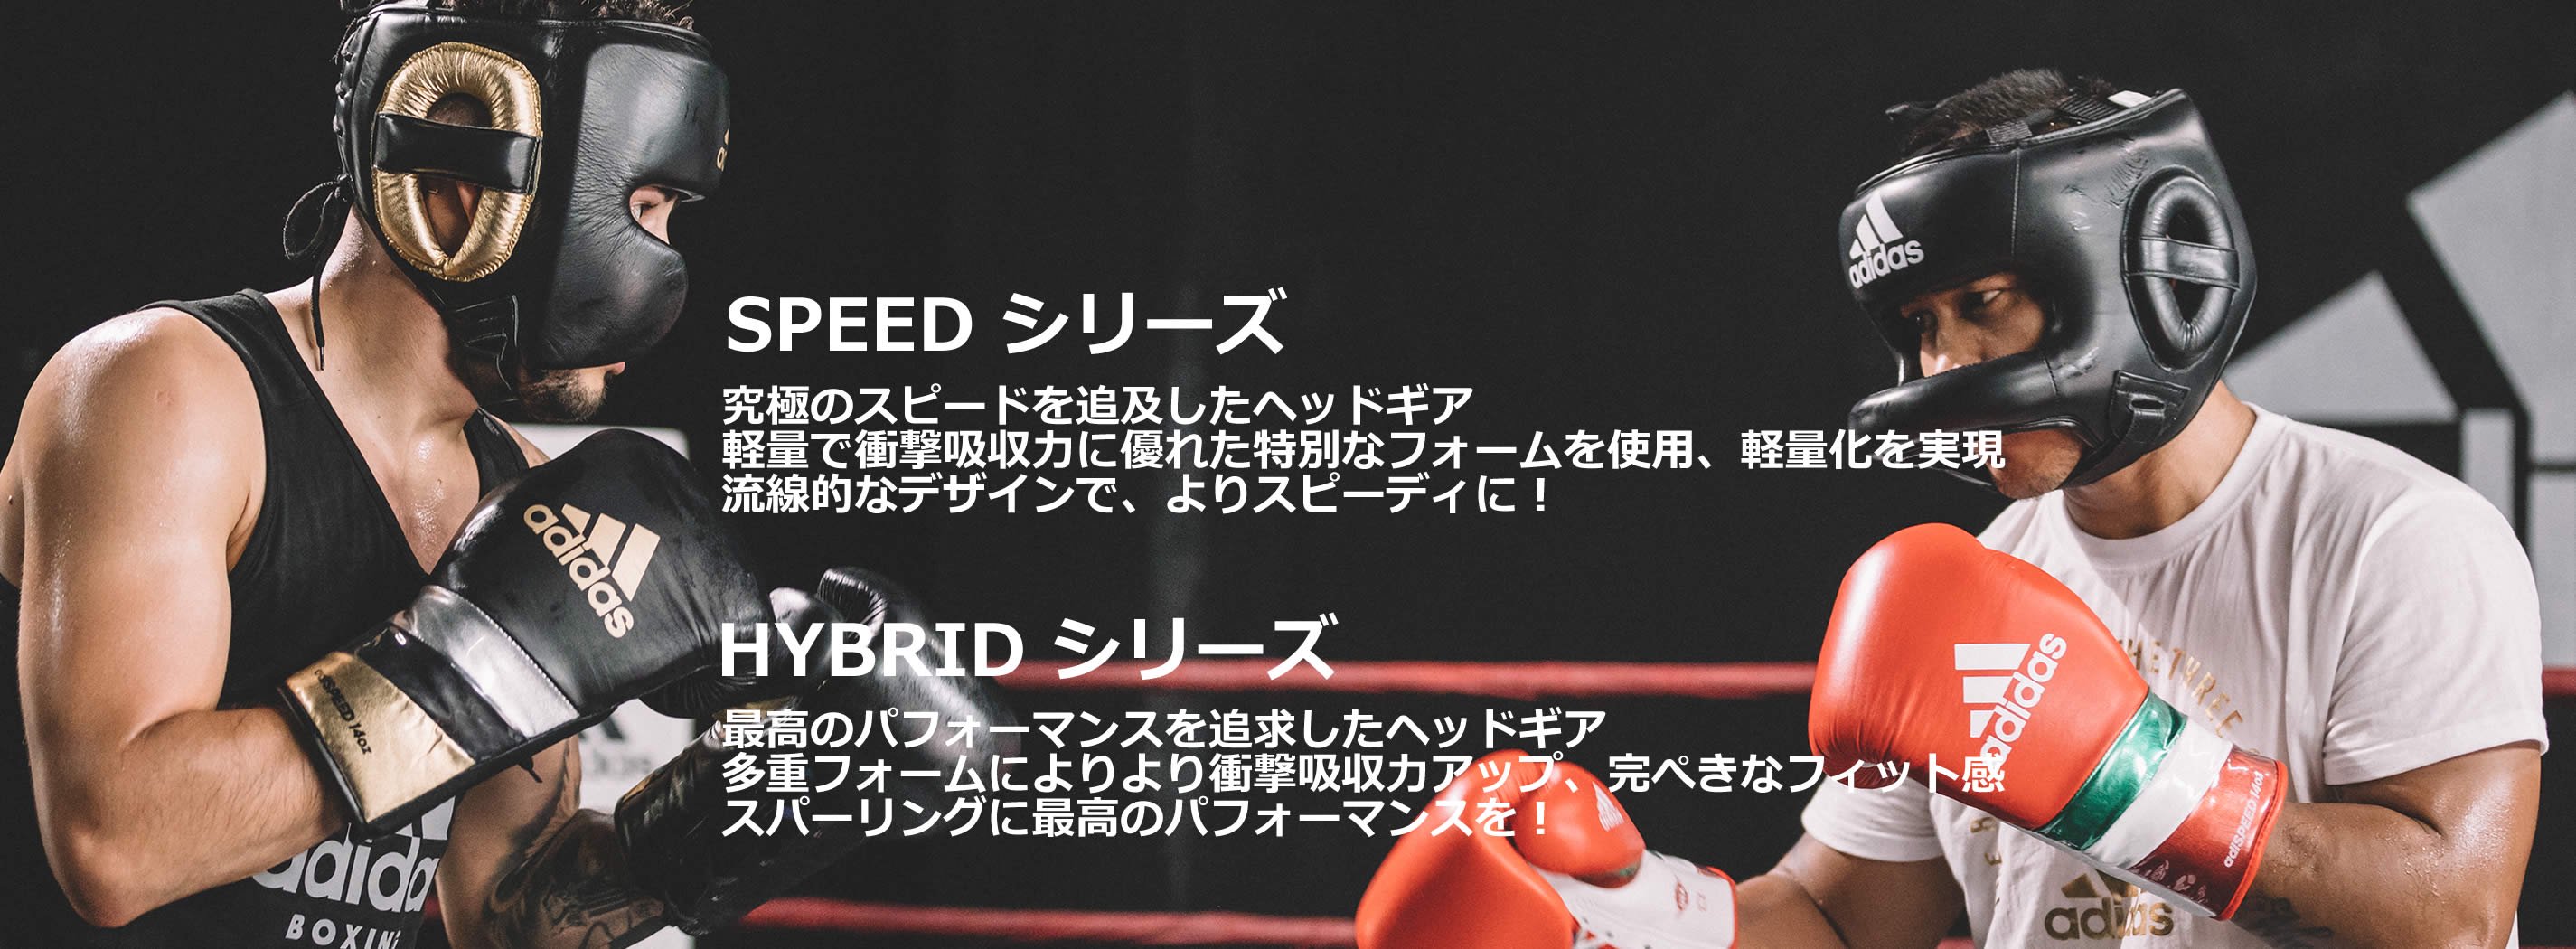 ヘッドガード - アディダス adidas 格闘技用品 ボクシング用品 空手衣